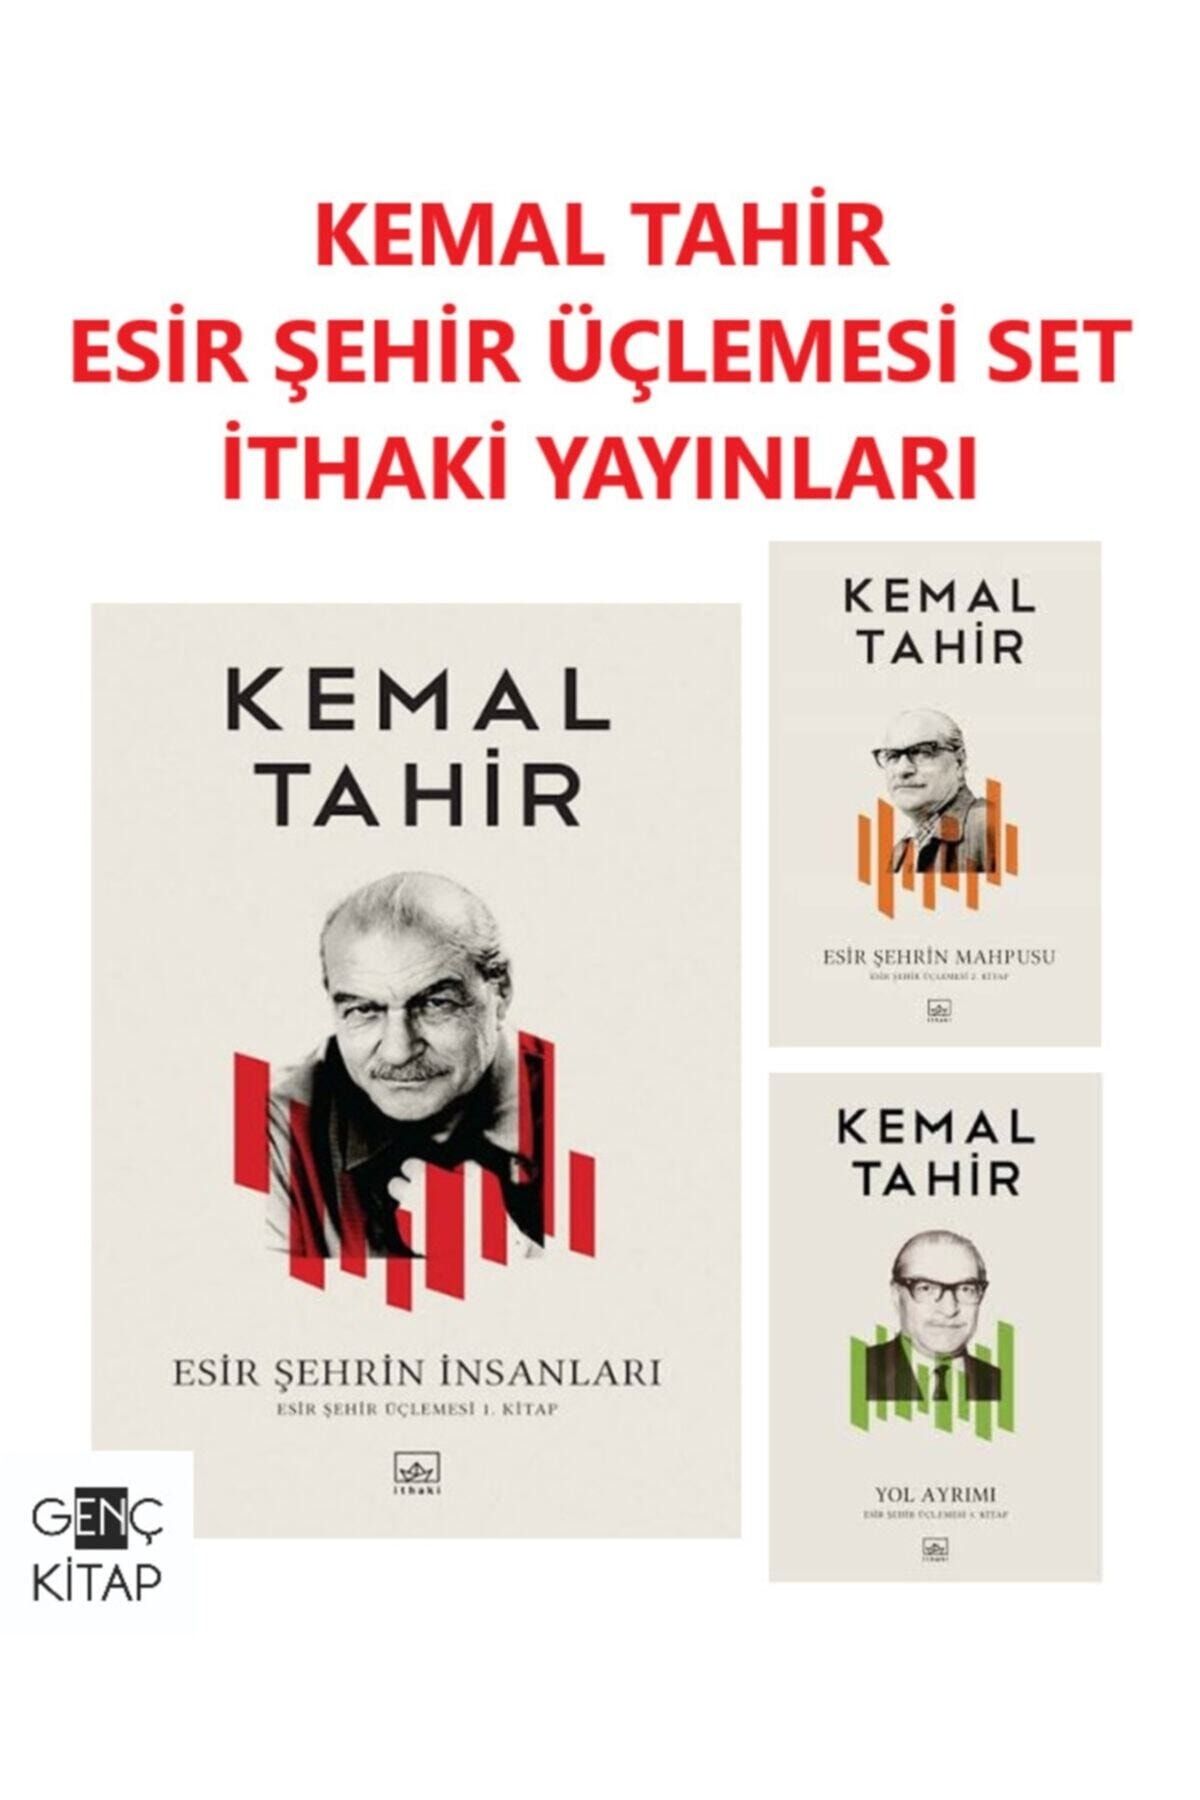 İthaki Yayınları Kemal Tahir Esir Şehir Üçlemesi Kitap Set Esir Şehrin Insanları-esir Şehrin Mahpusu